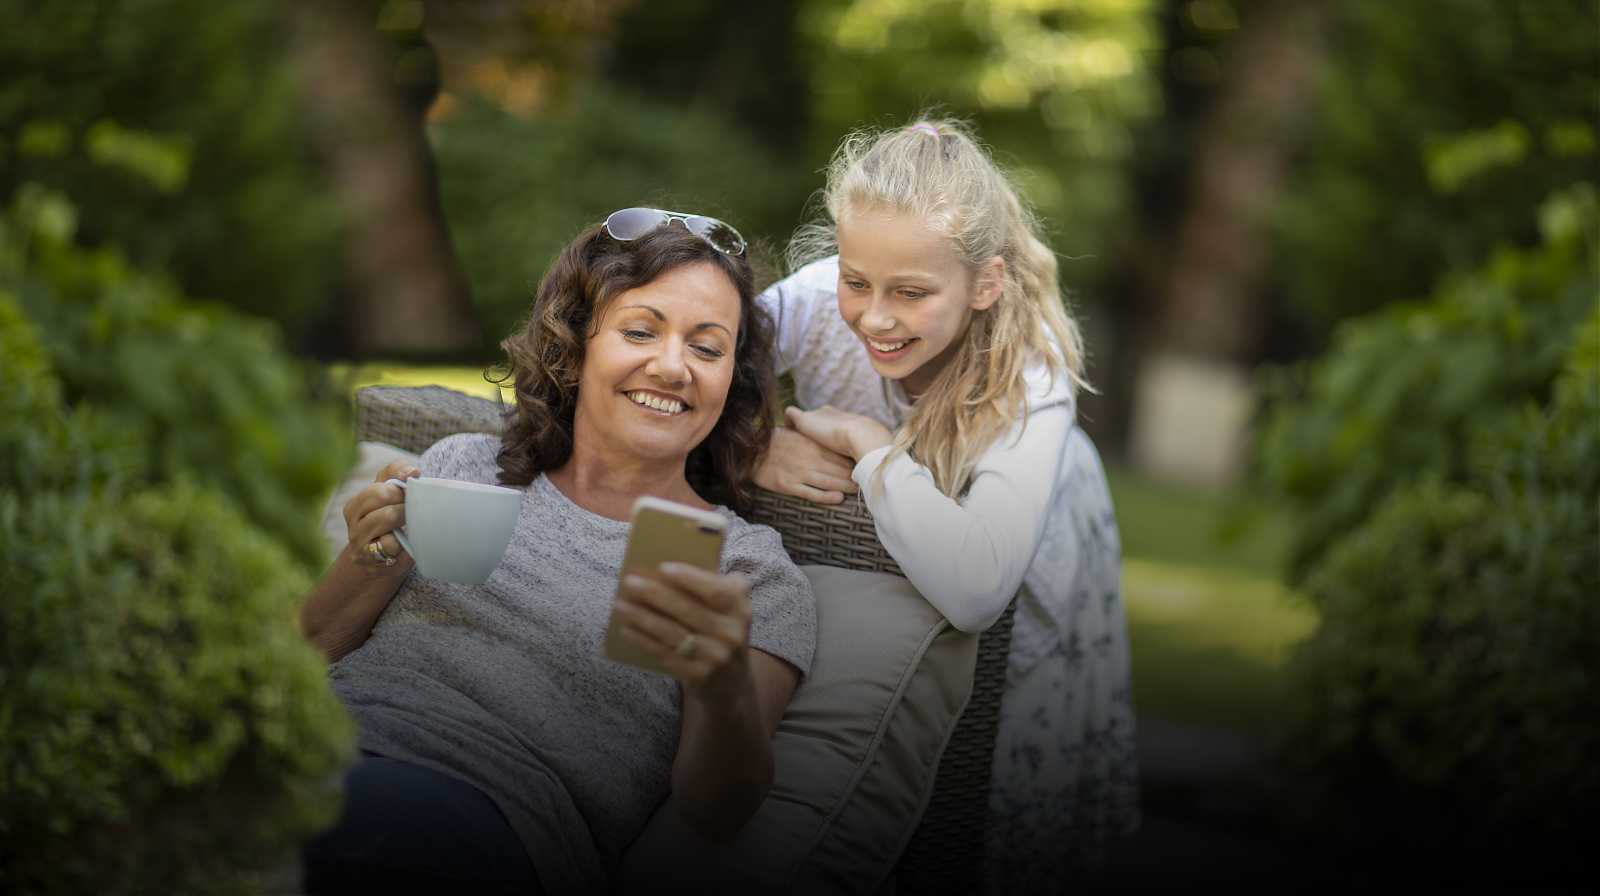 madre e hija mirando la pantalla de un teléfono móvil